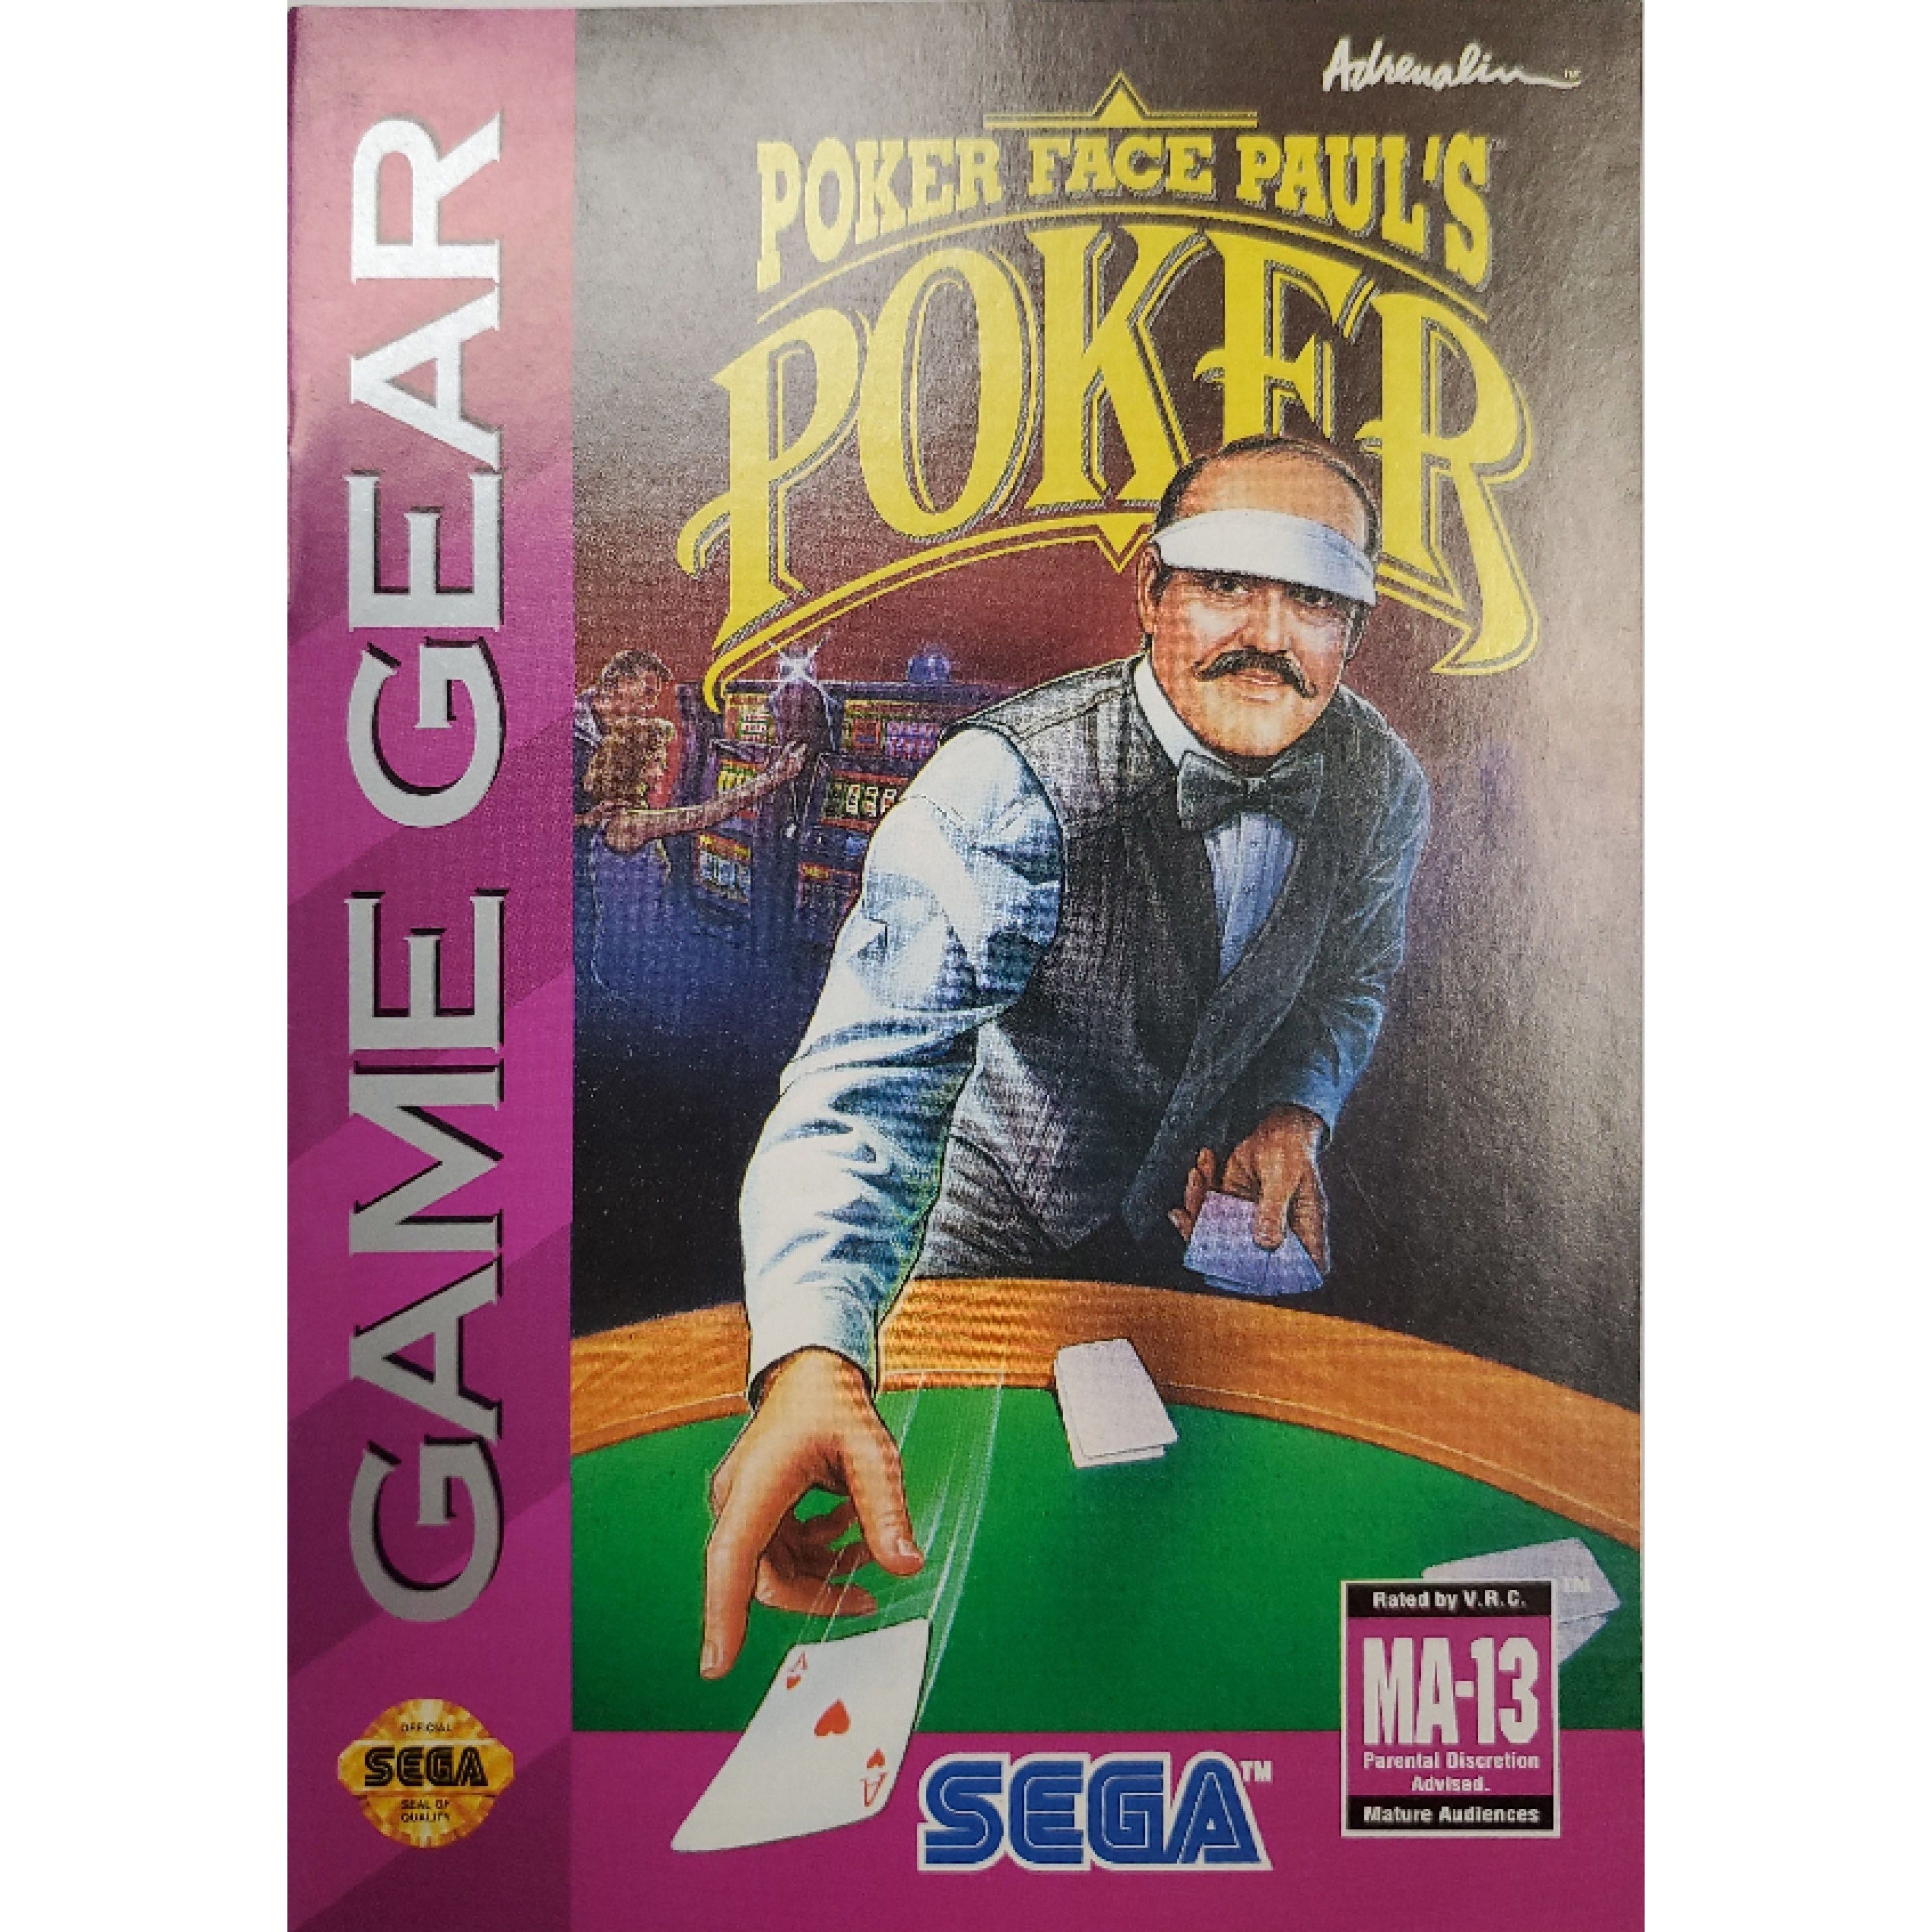 GameGear - Poker Face Paul's Poker (Manuel)